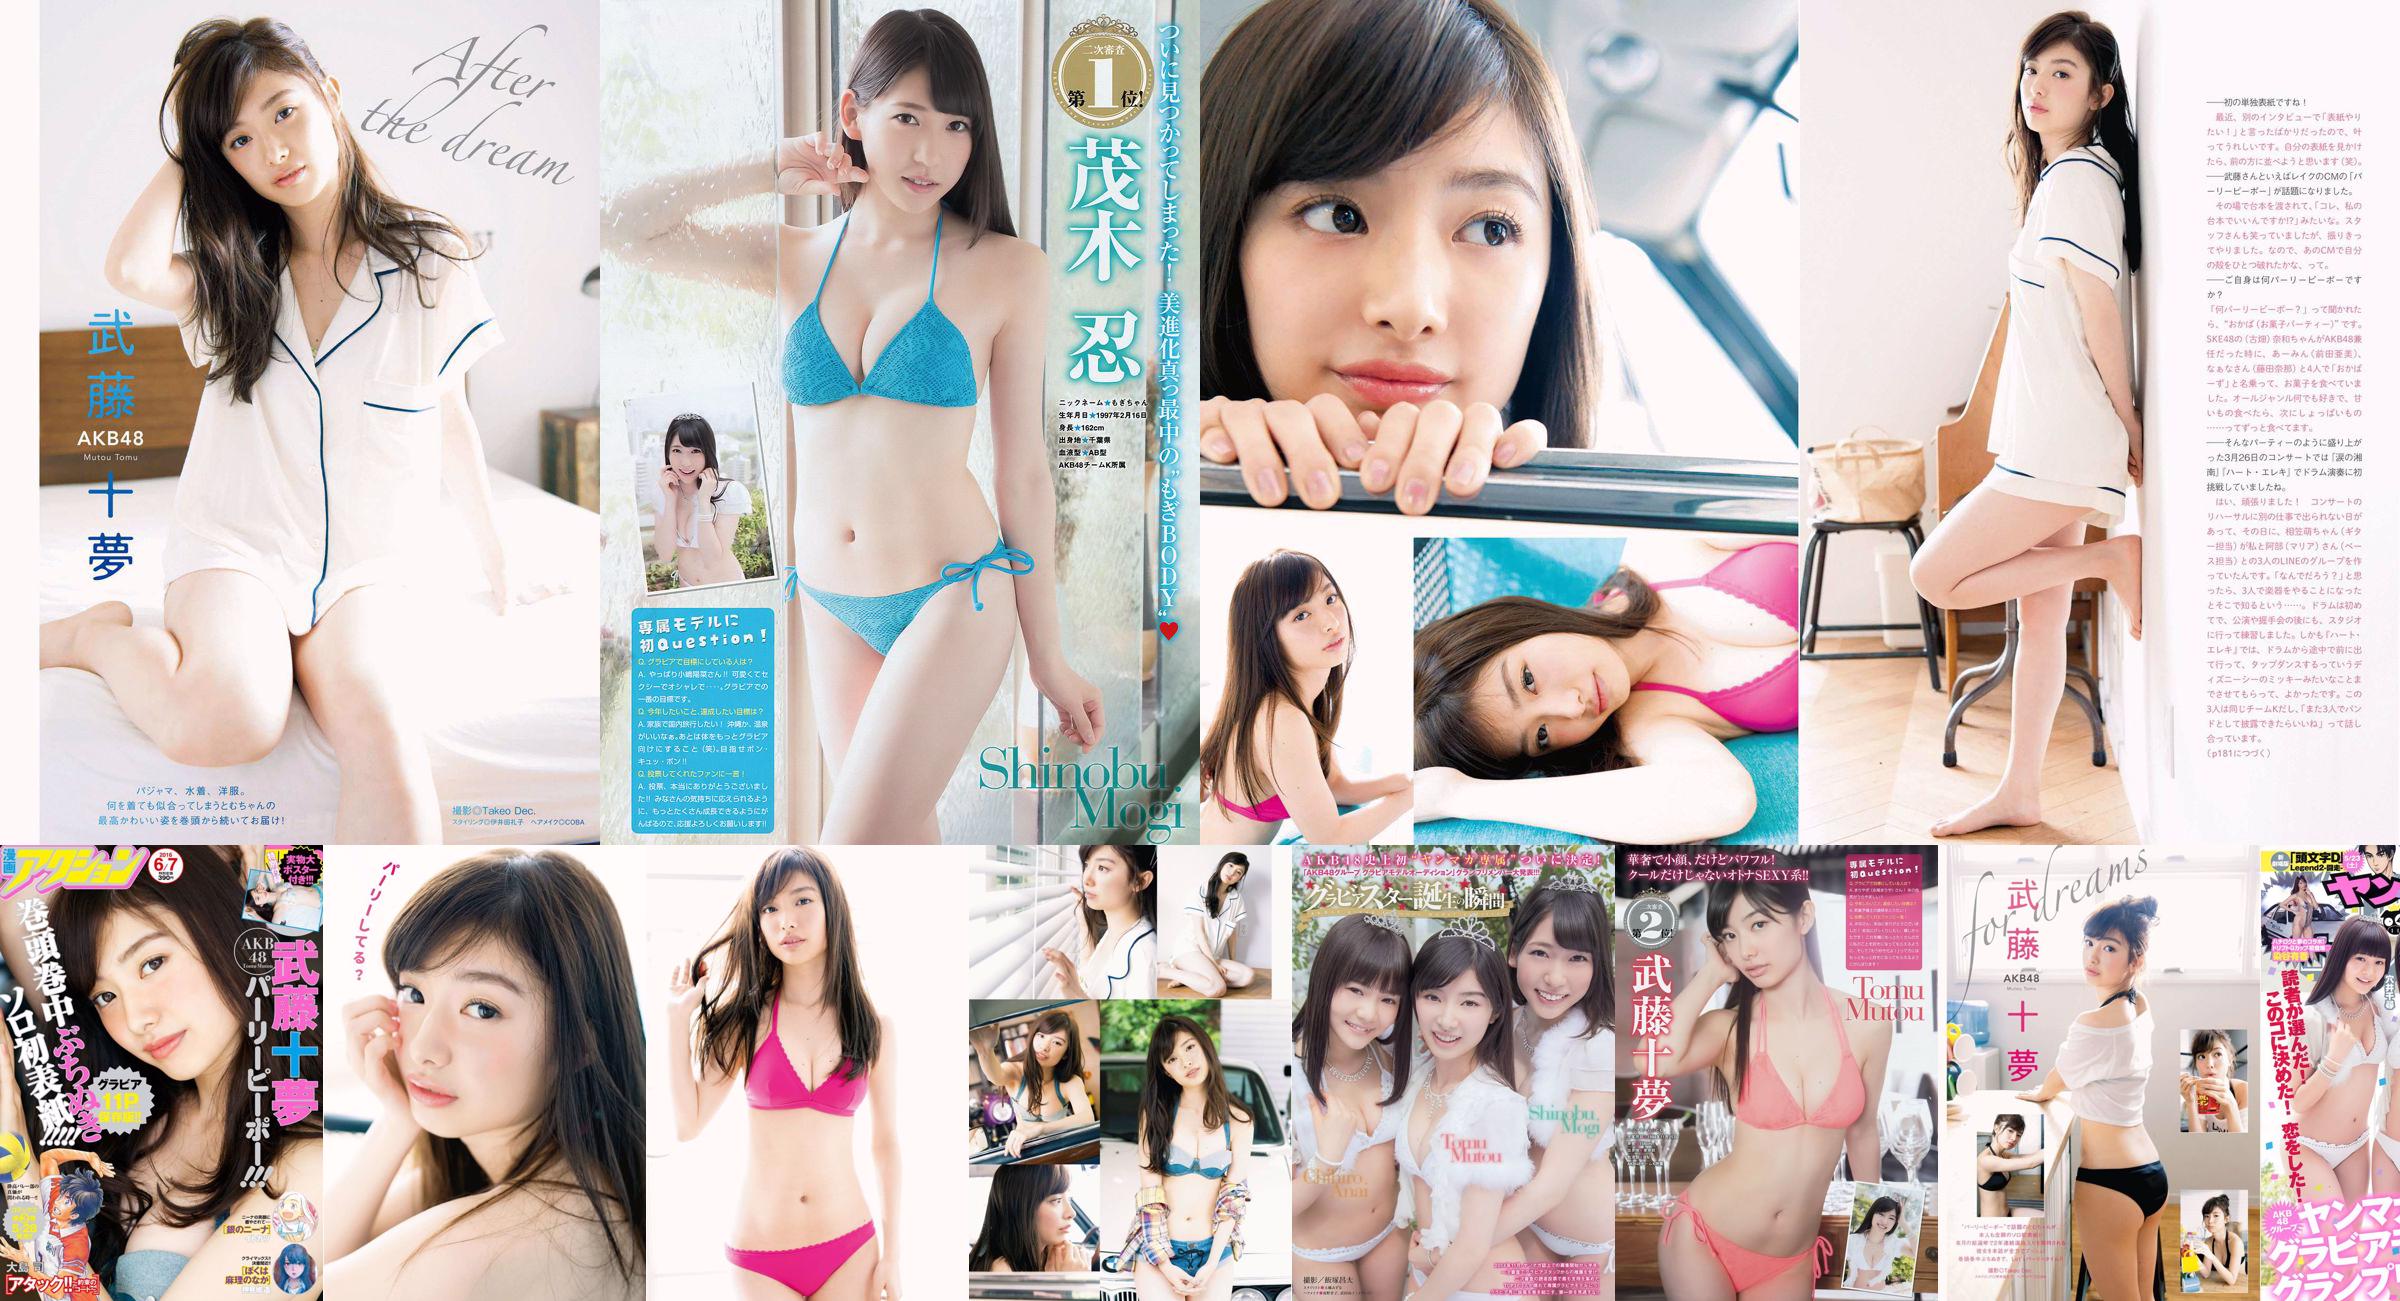 [Young Magazine] Tomu Muto Shinobu Mogi Chihiro Anai Erina Mano Yuka Someya 2015 No.25 Foto No.f0d878 Pagina 1